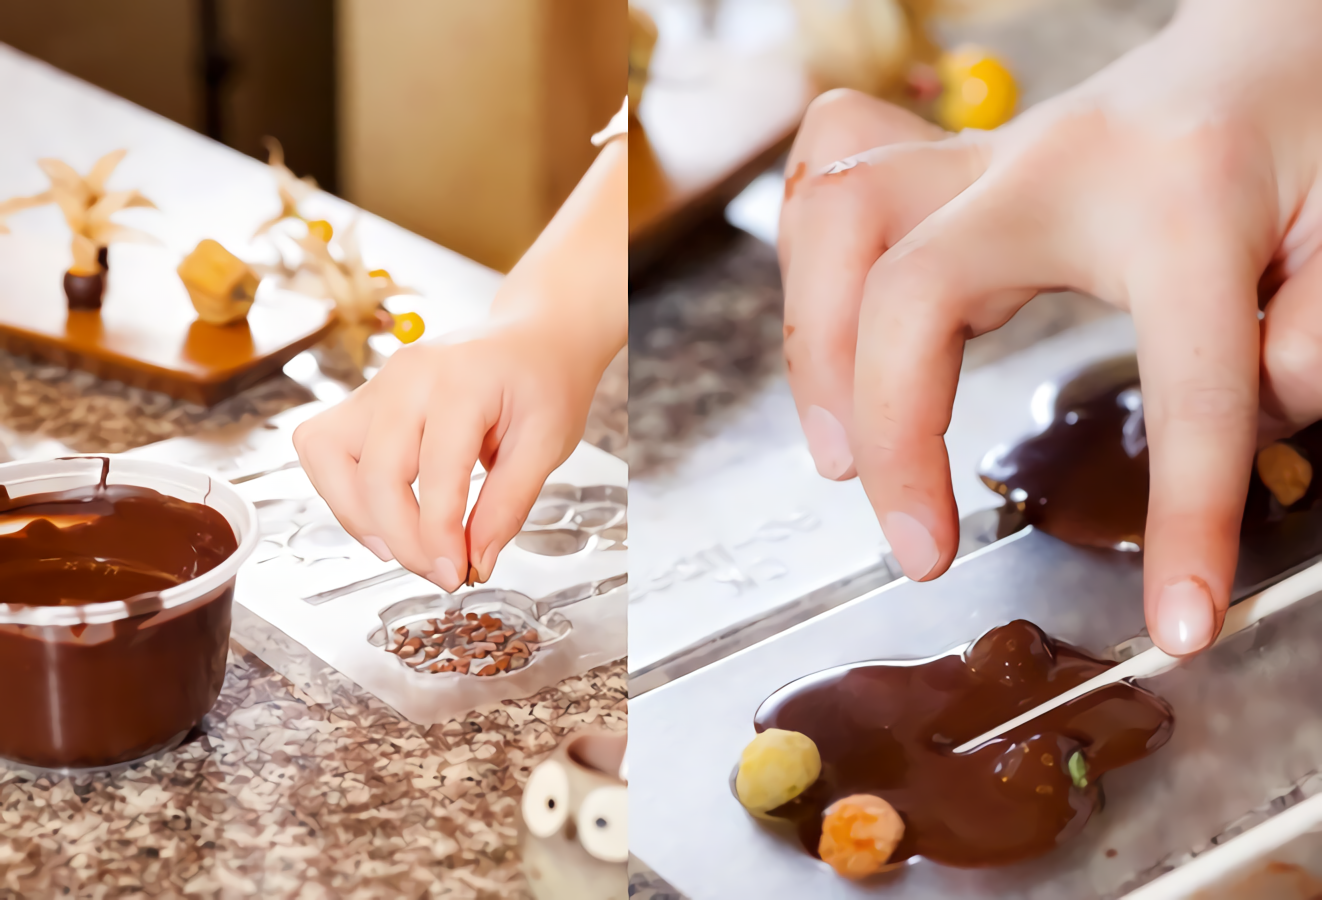 【南投清境】Nina巧克力工坊-巧克力棒棒糖DIY - 南投好好玩